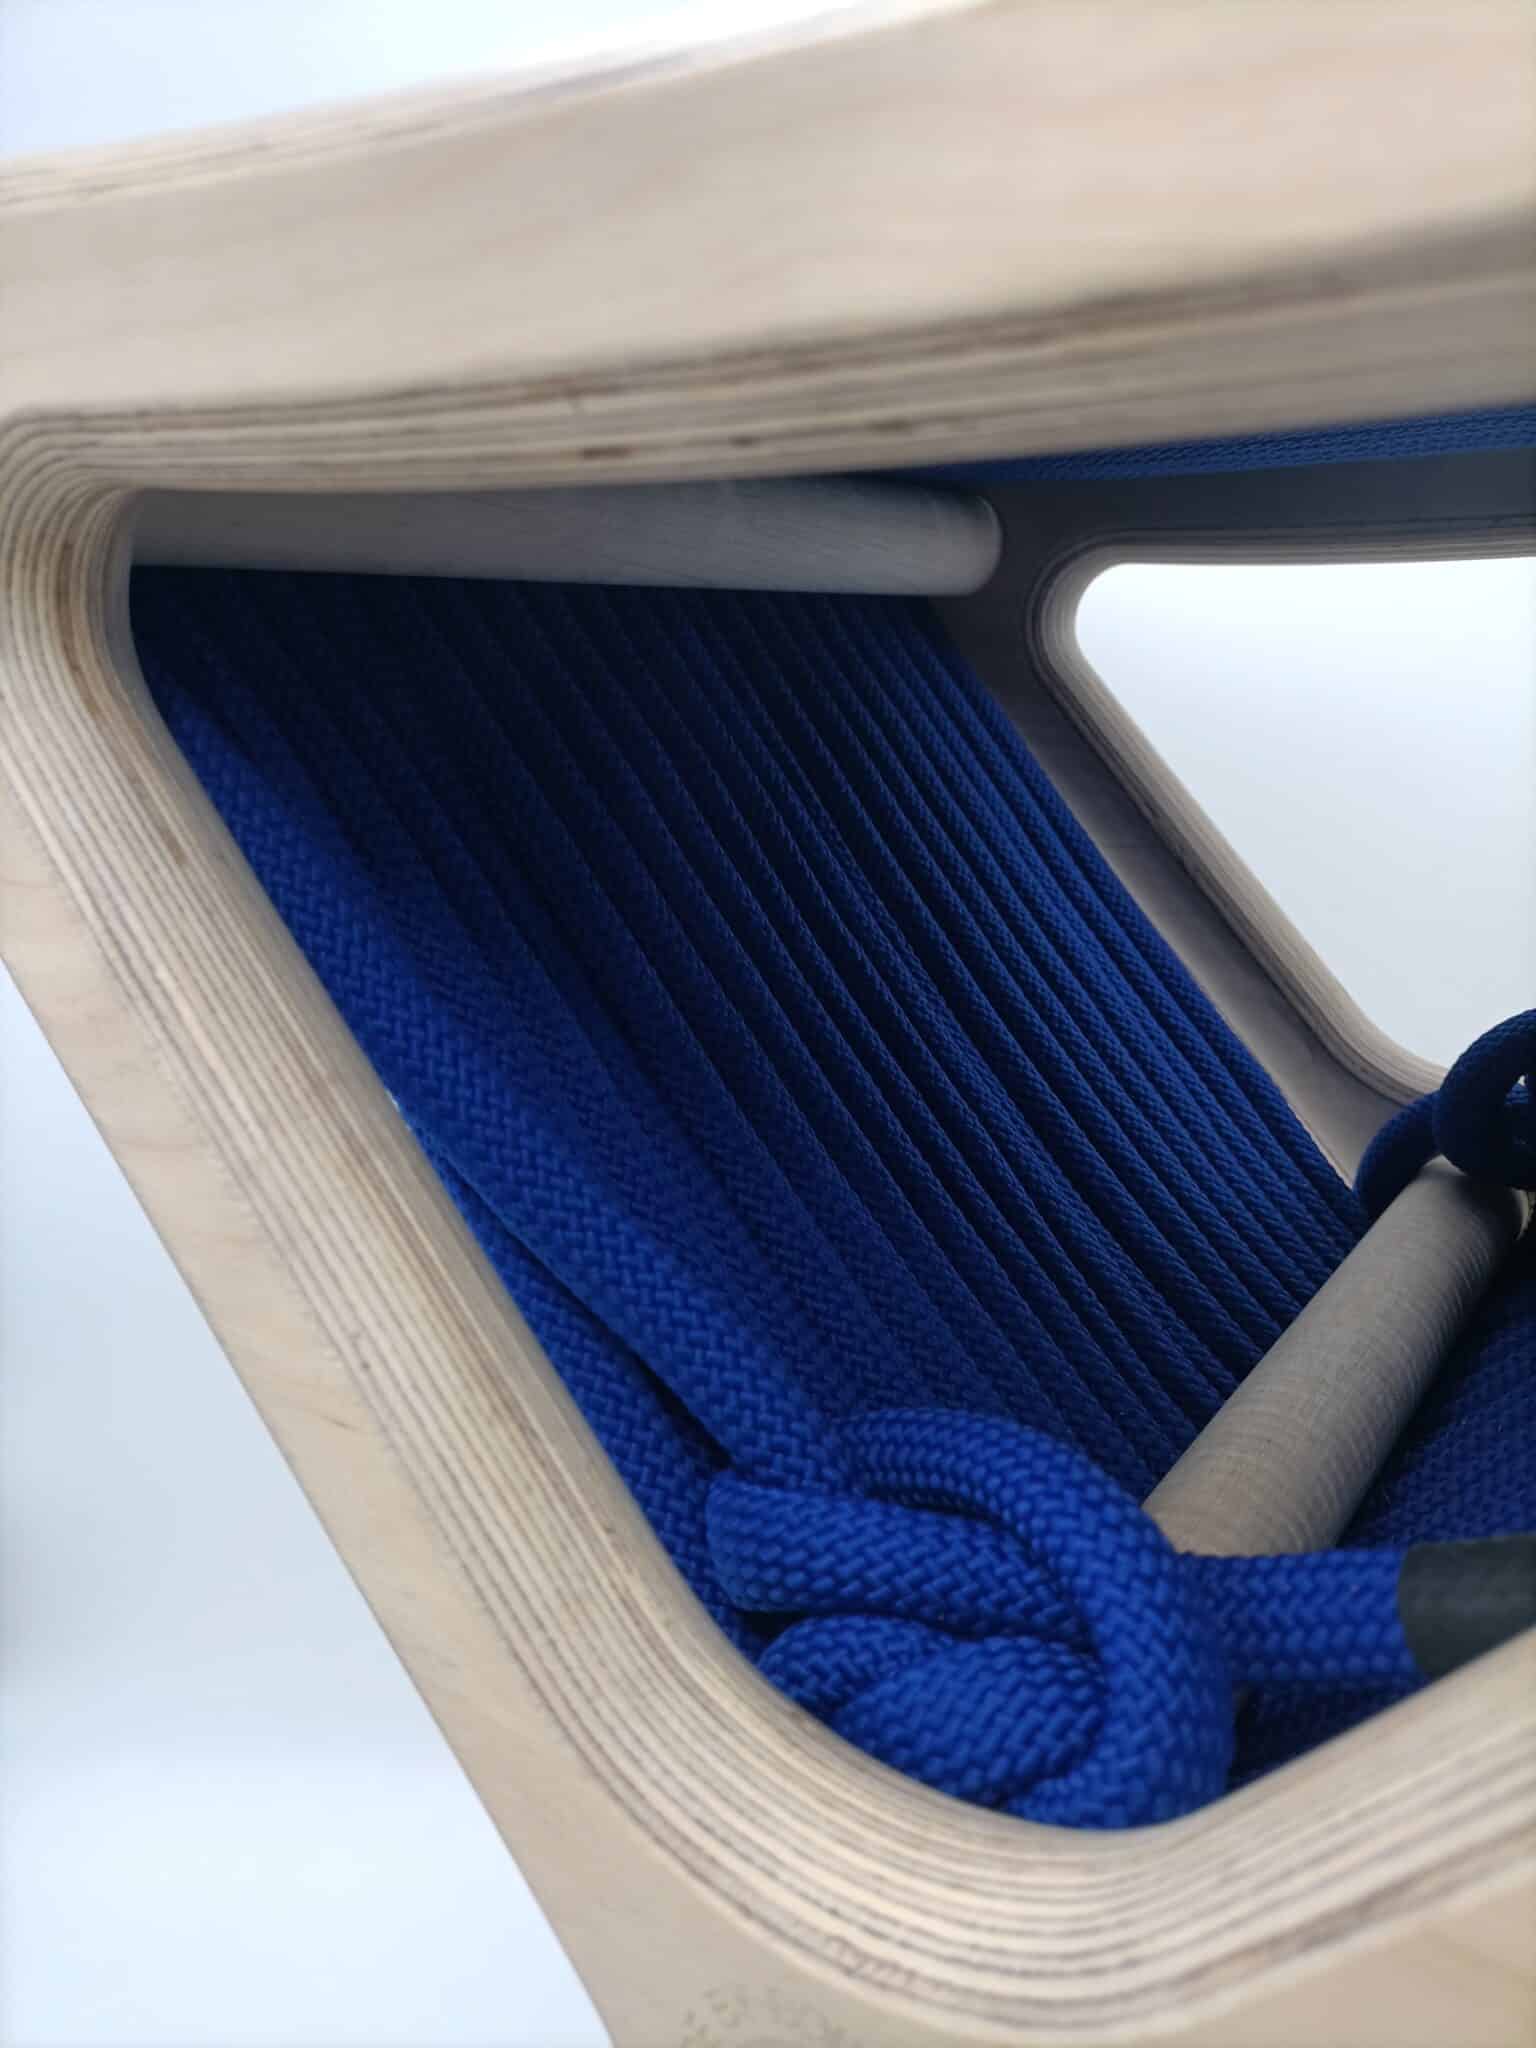 Tabouret Tabcord by MBB désigné par Sophie Dalla Rosa avec corde bleu royal en polyester recyclé